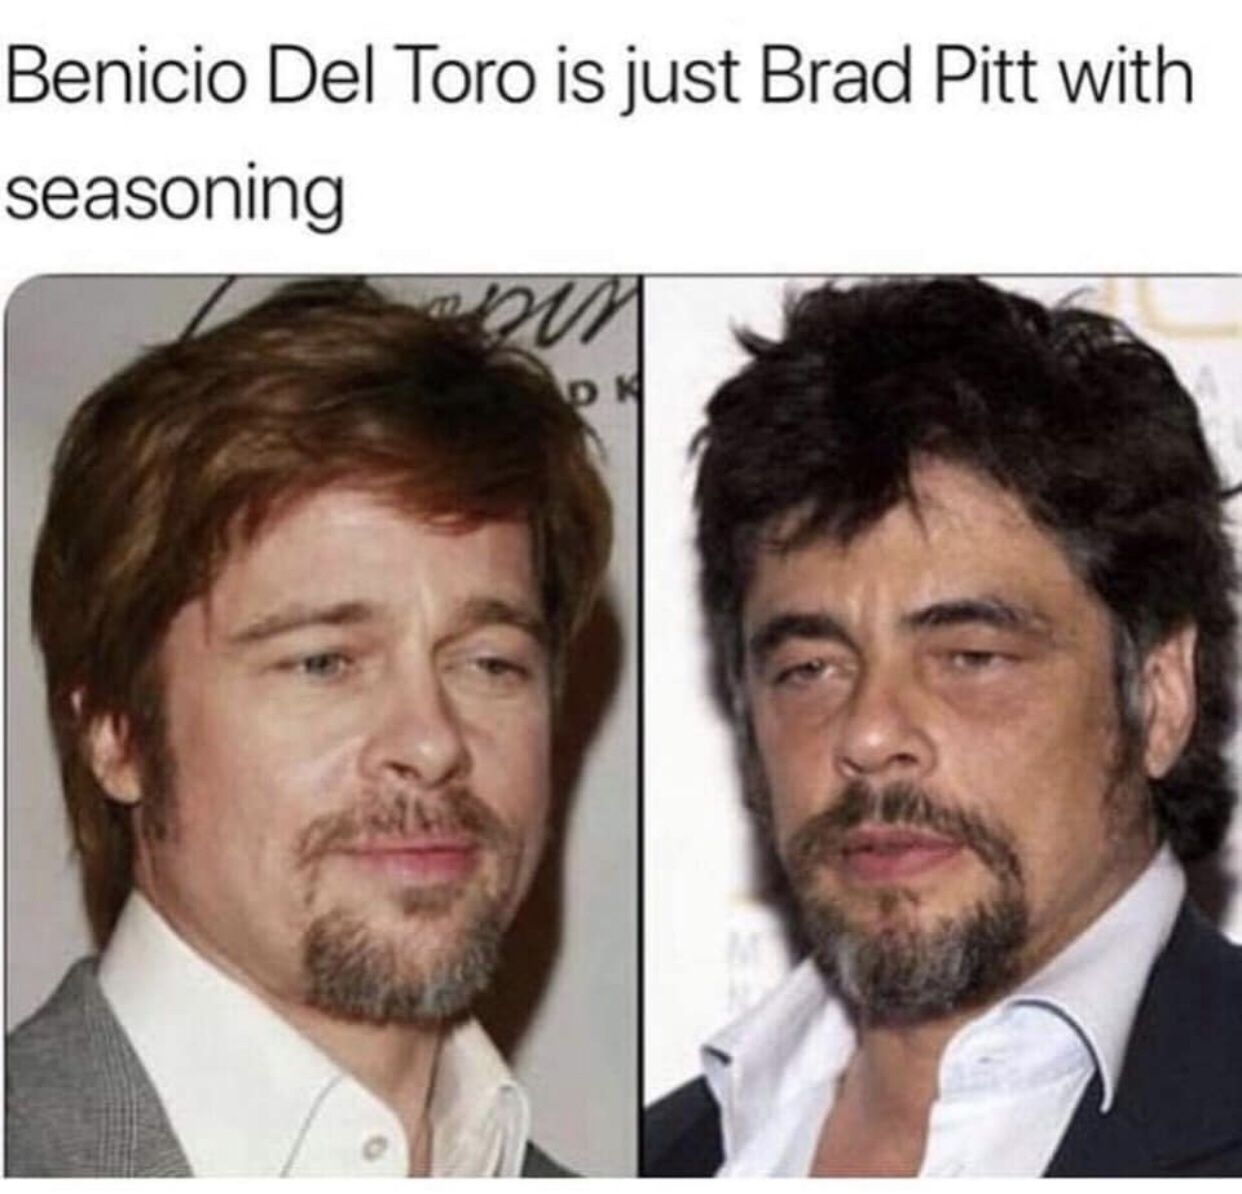 memes - benicio del toro brad pitt - Benicio Del Toro is just Brad Pitt with seasoning